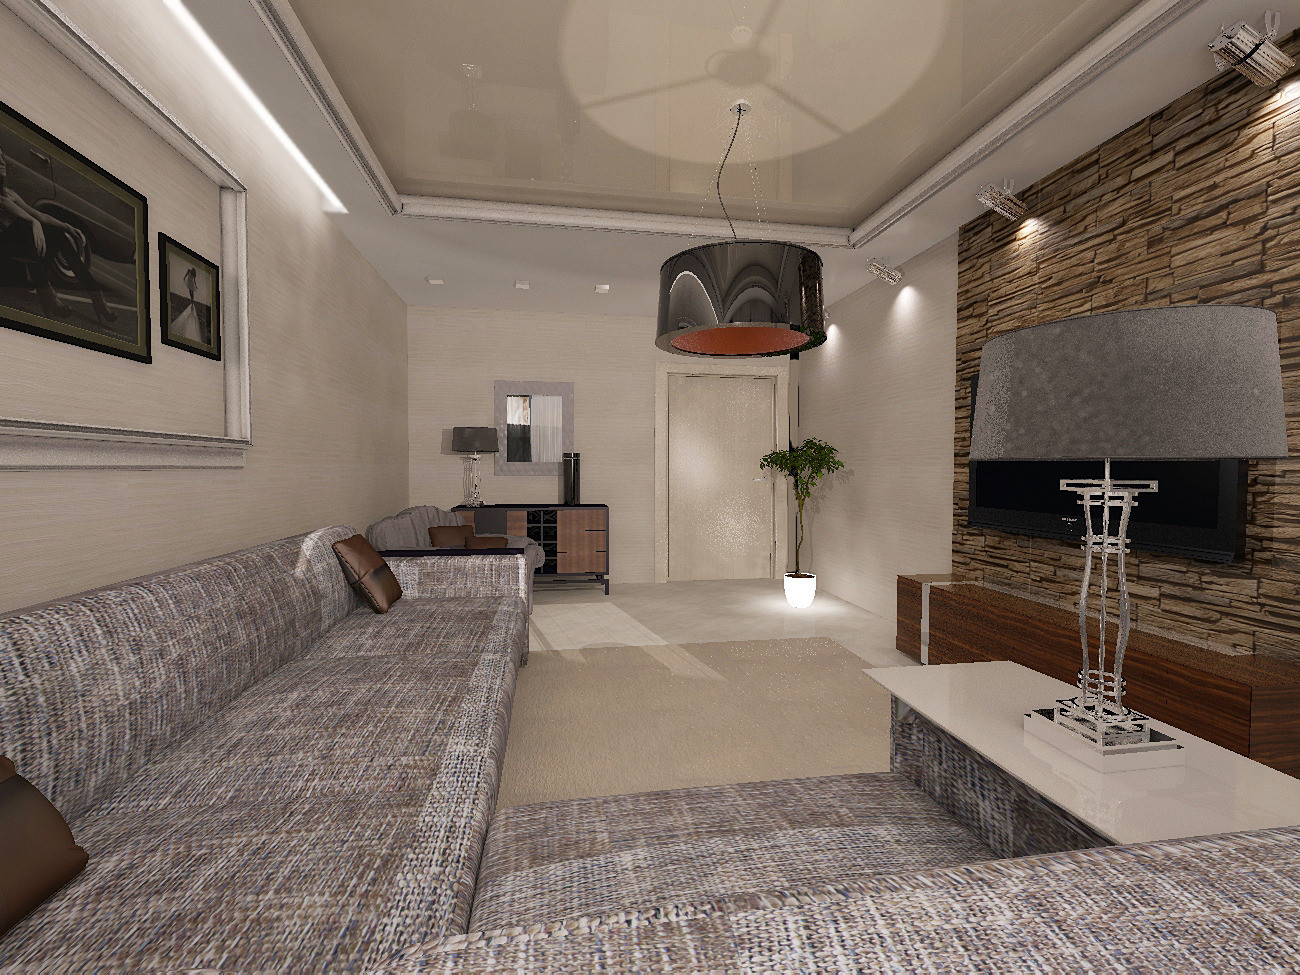 Интерьер комнаты 15 квадратных метров » Современный дизайн на Vip-1gl